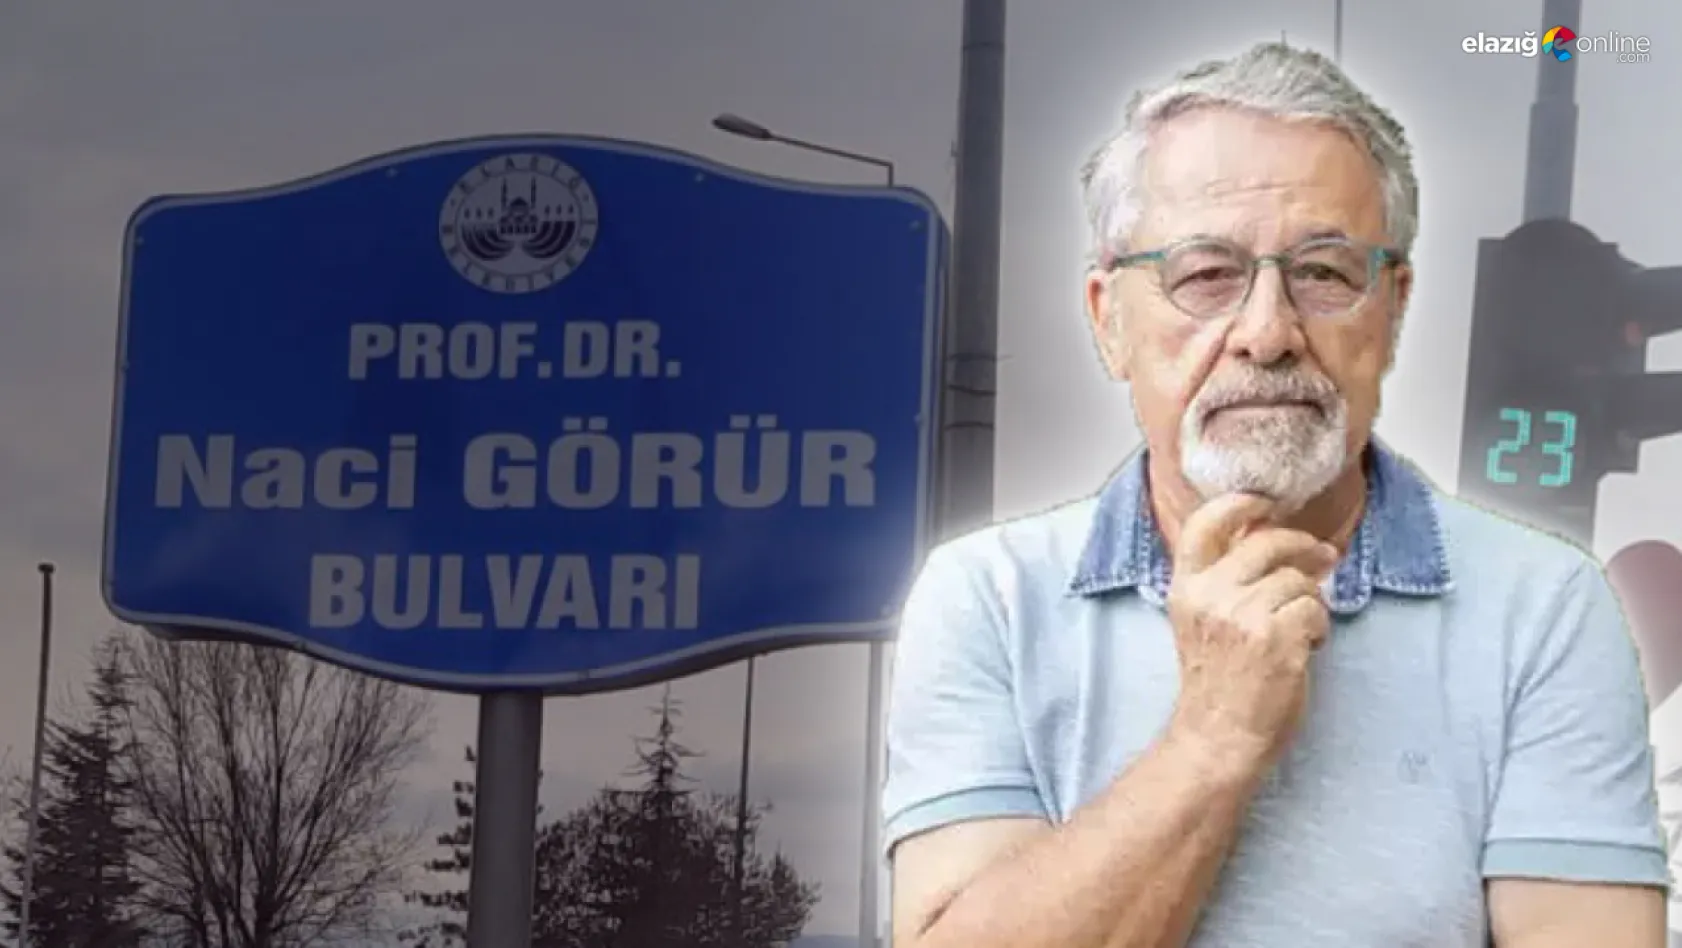 Elazığlı Deprem Bilimci Prof. Dr. Naci Görür'ün adı bir bulvara verildi